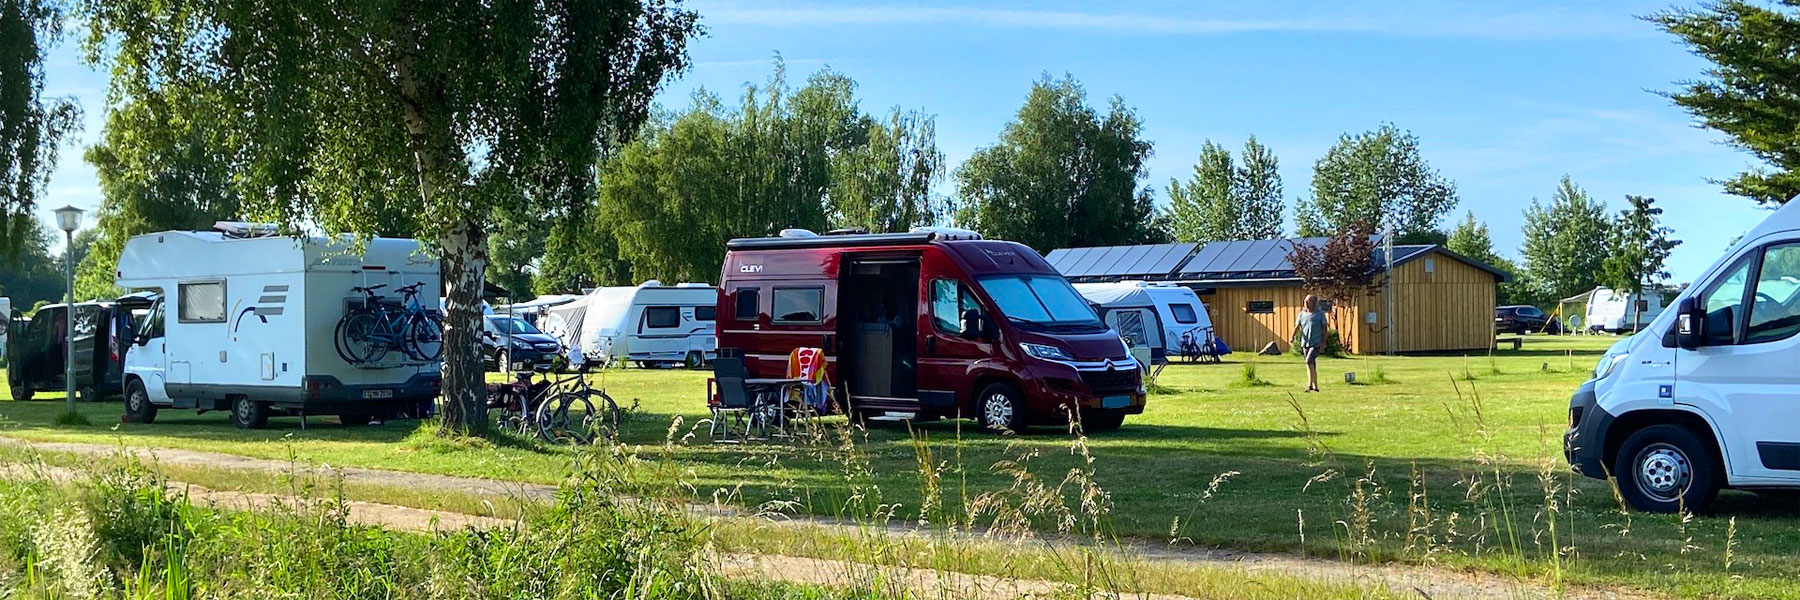 Wohnmobile - Campingplatz Ostseequelle